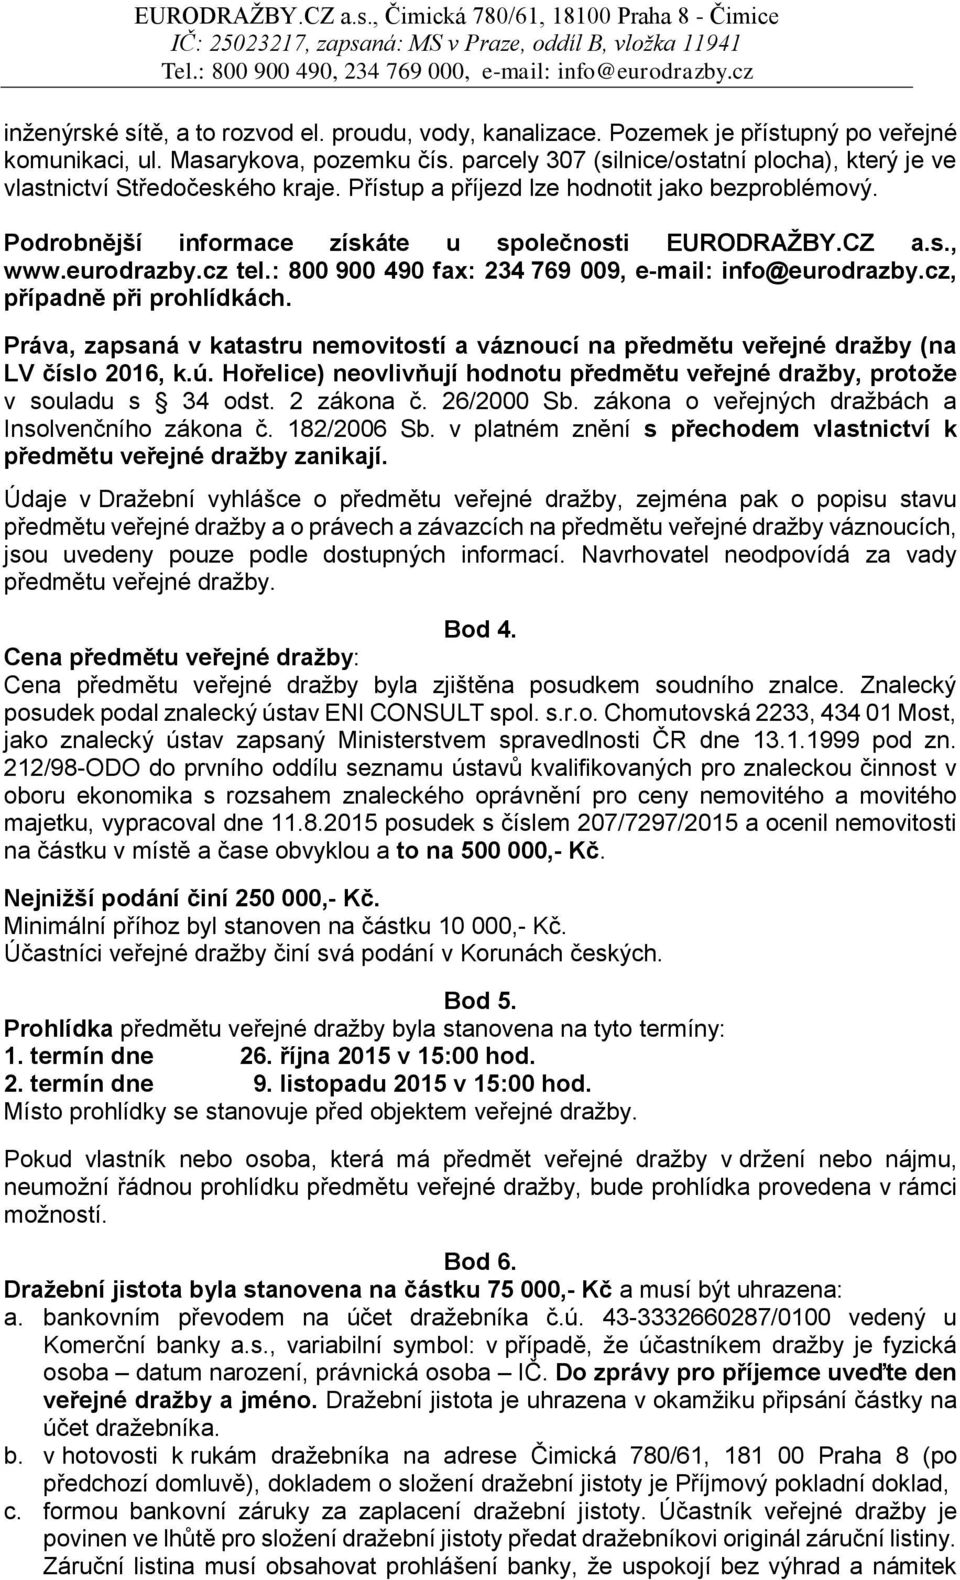 eurodrazby.cz tel.: 800 900 490 fax: 234 769 009, e-mail: info@eurodrazby.cz, případně při prohlídkách.